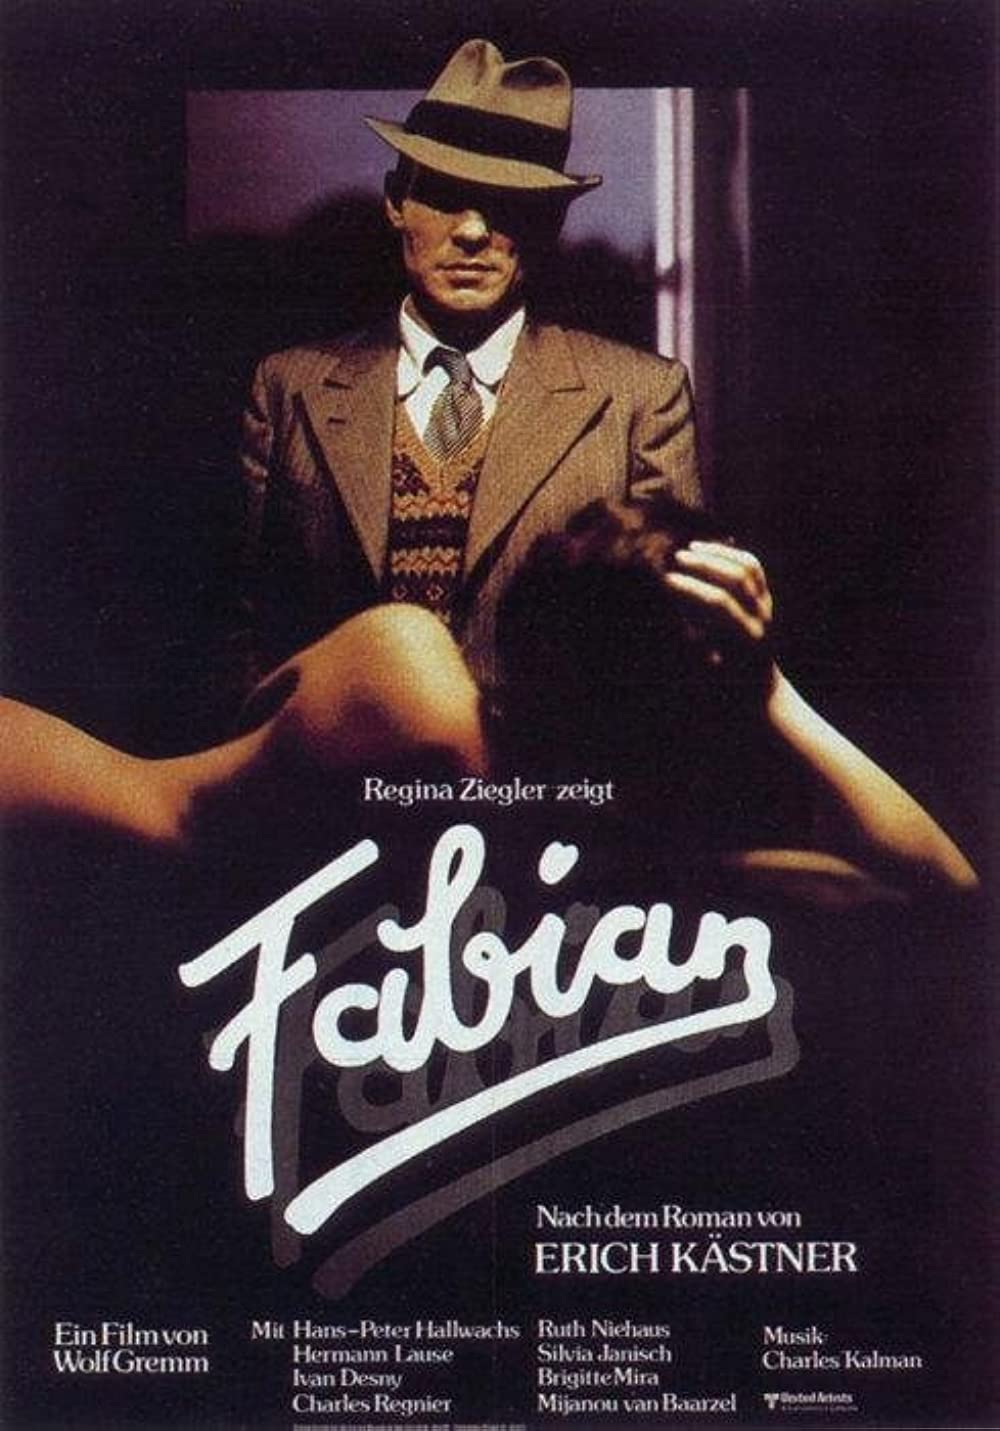 Filmbeschreibung zu Fabian (1980)